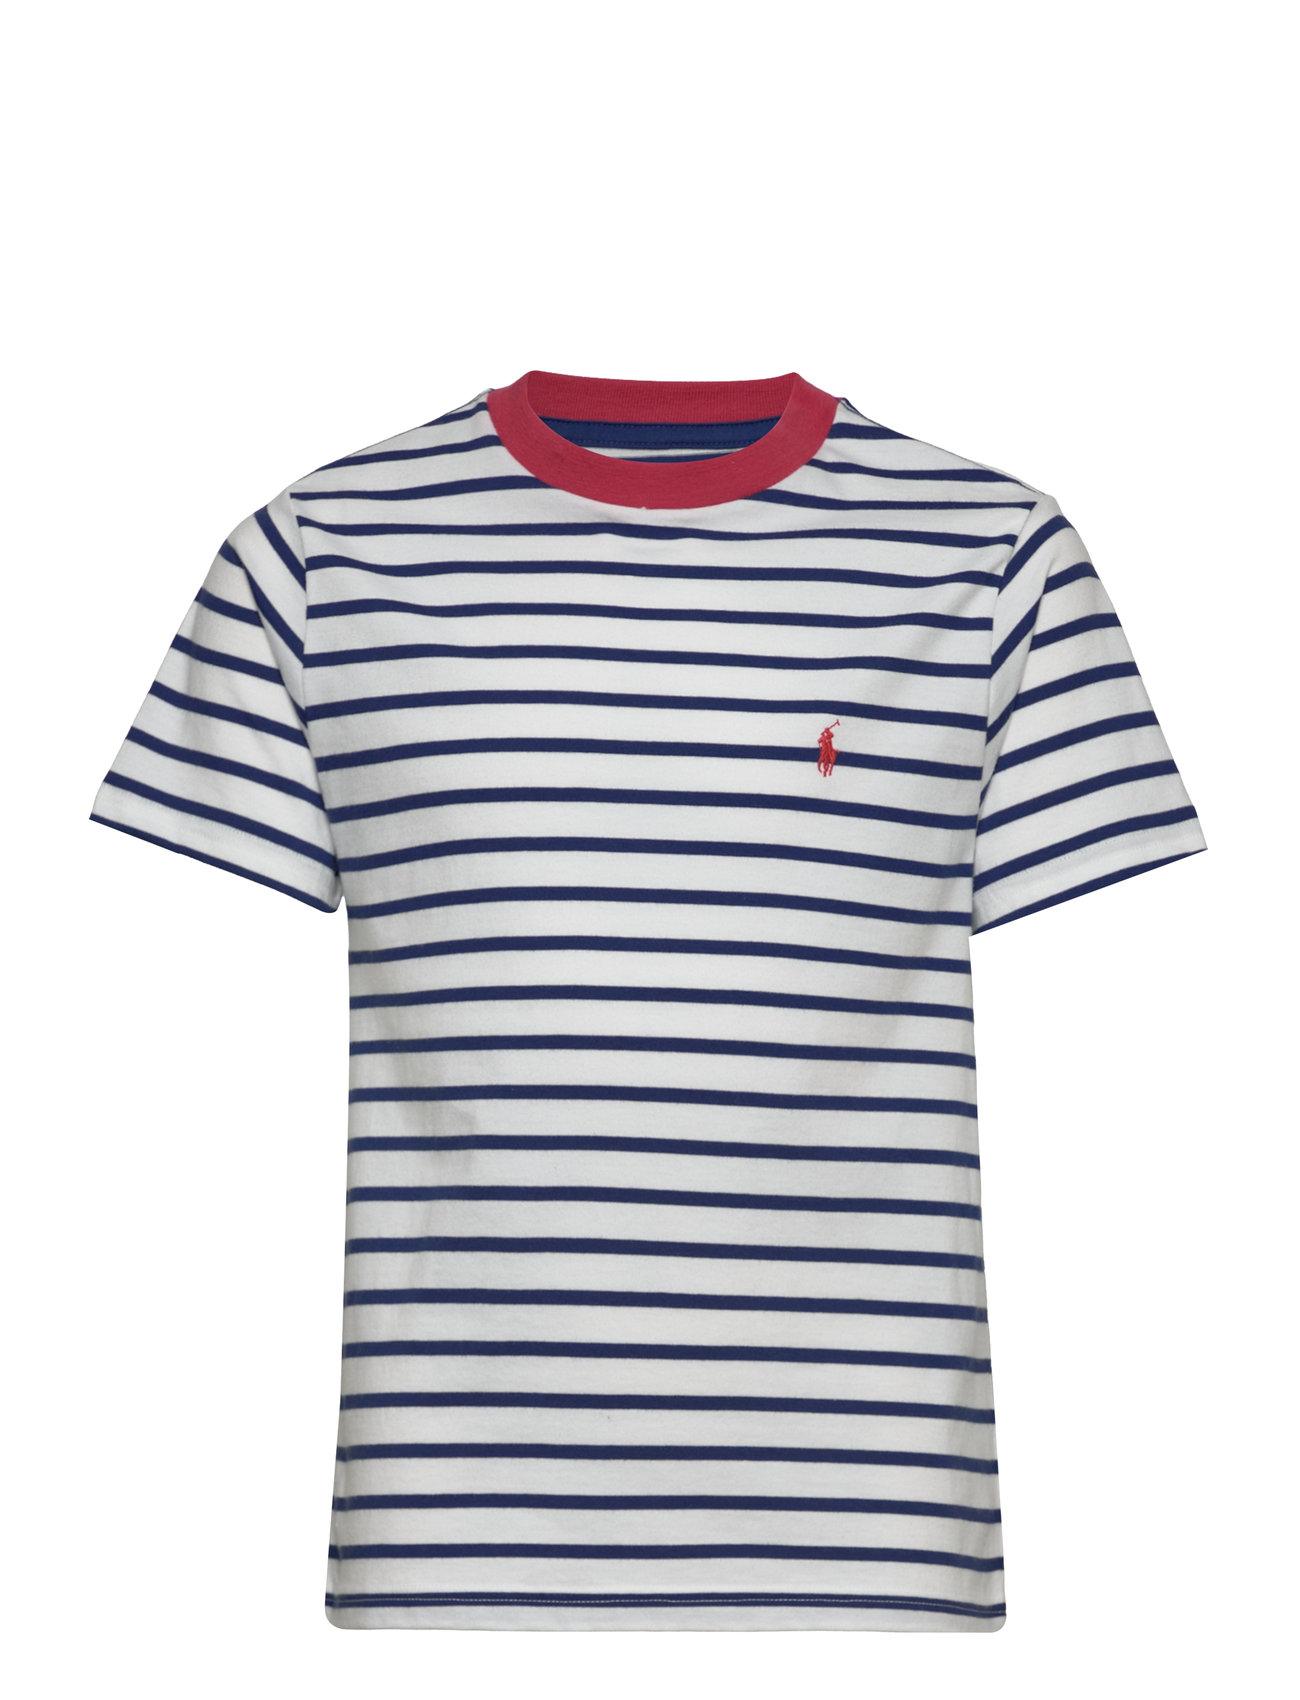 Striped Cotton Jersey Tee Tops T-shirts Short-sleeved Blue Ralph Lauren Kids